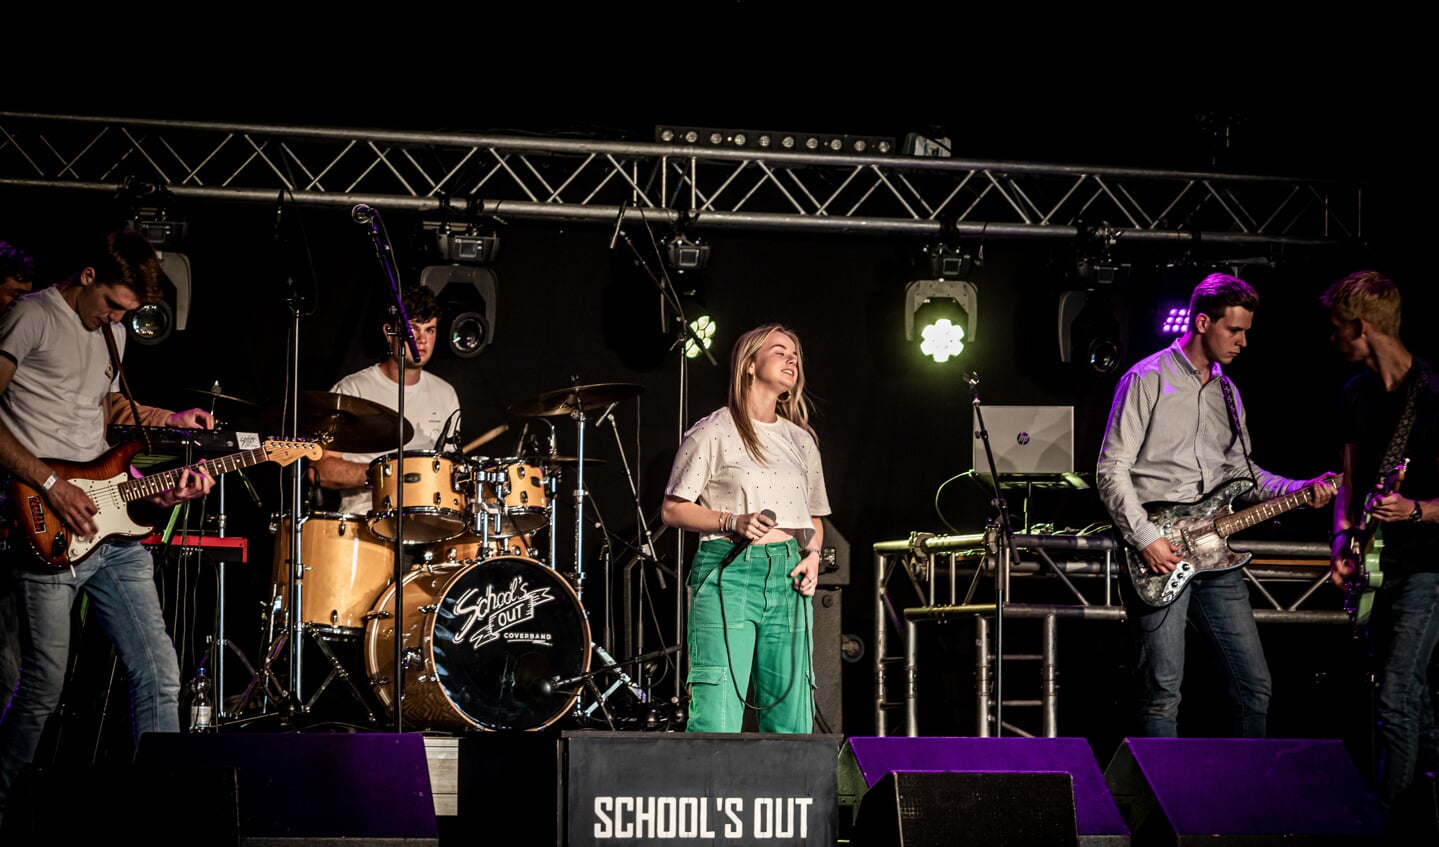 Op het podium van de Balzaal opende vrijdagavond de coverband School’s Out uit Lichtenvoorde Reurpop.